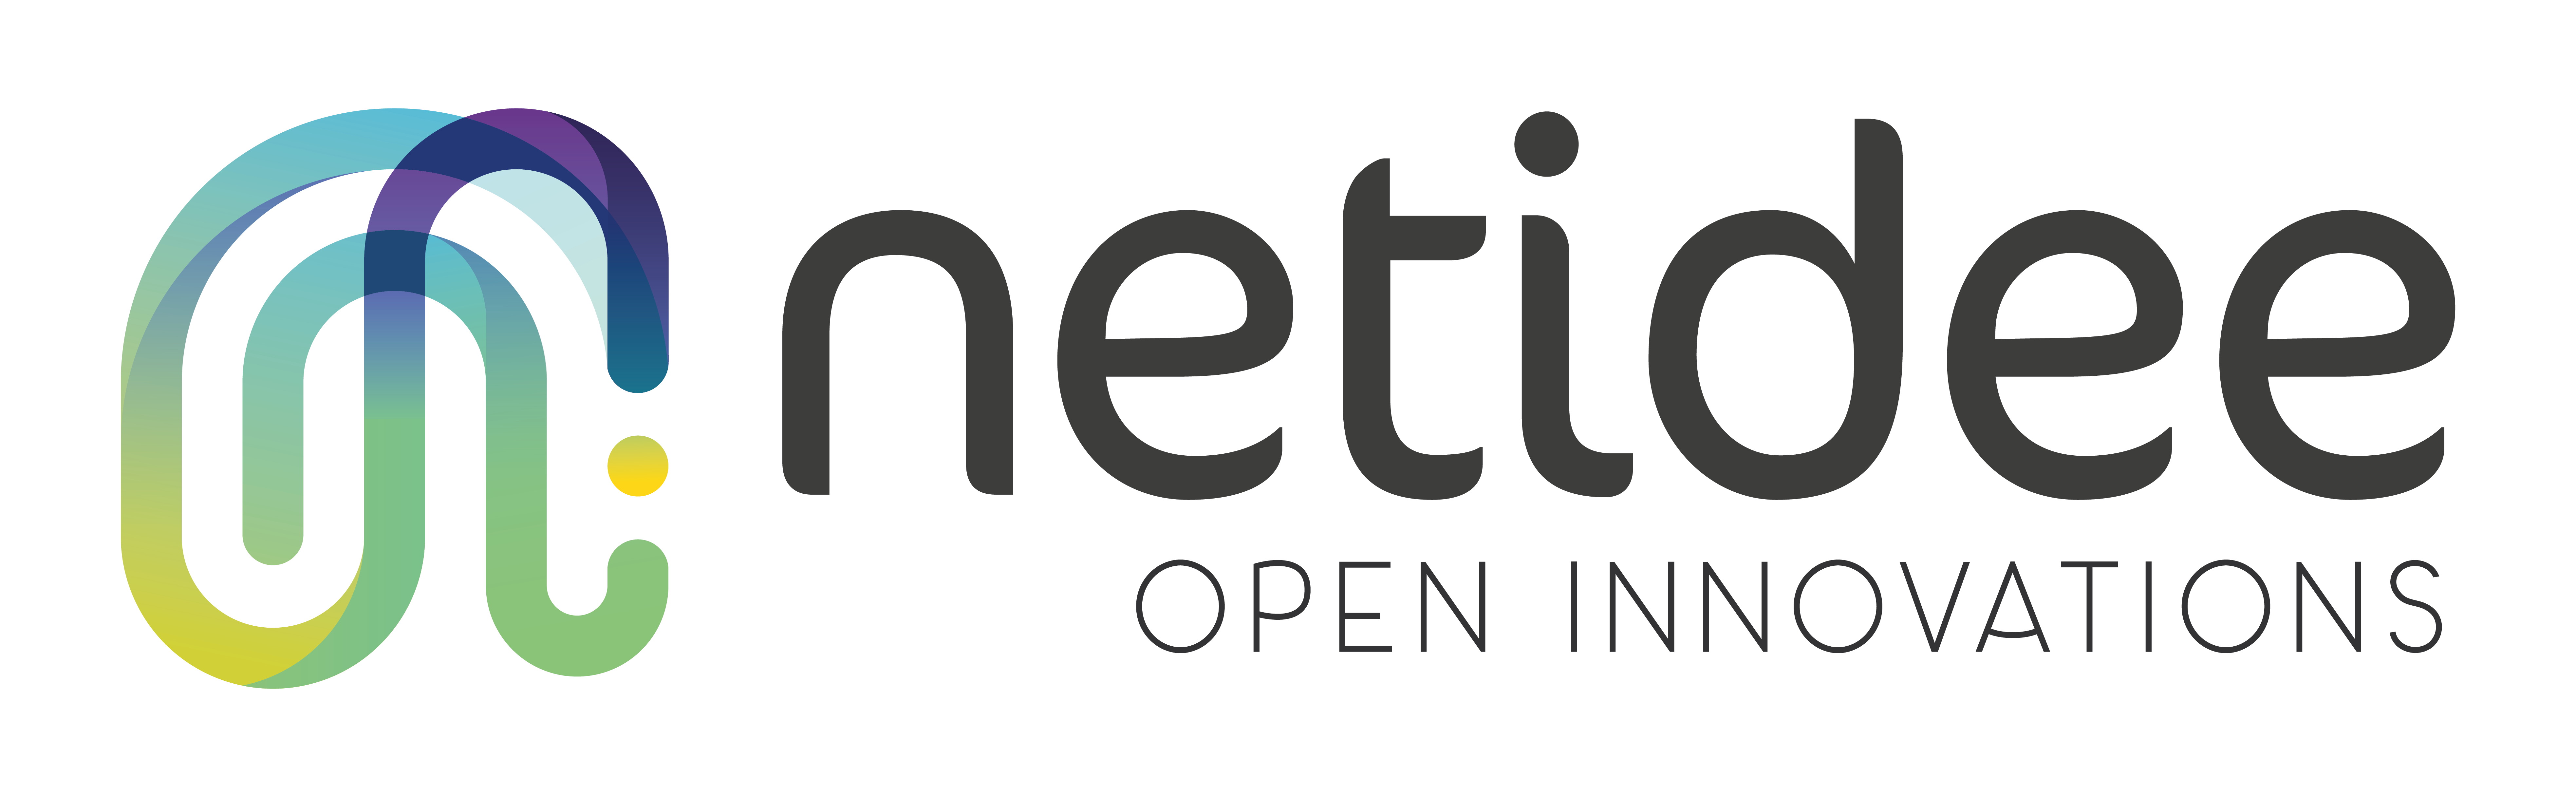 Netidee Logo